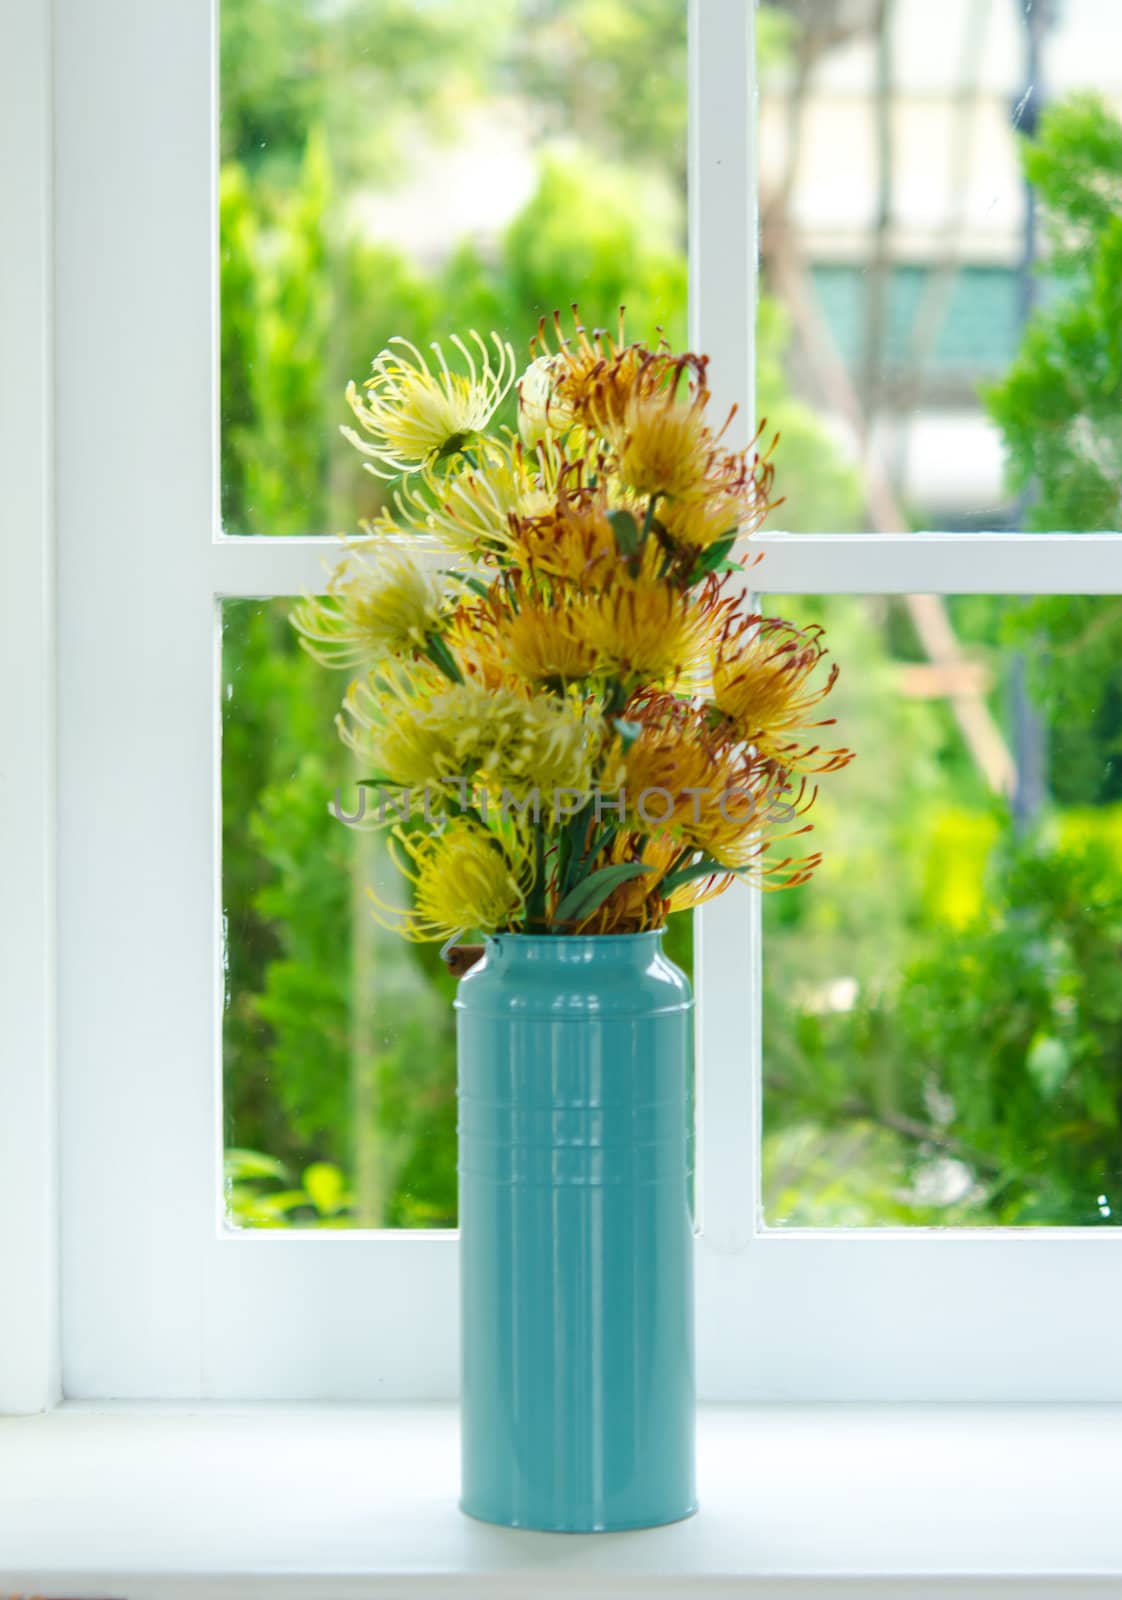 Flowers in a blue vase near the window